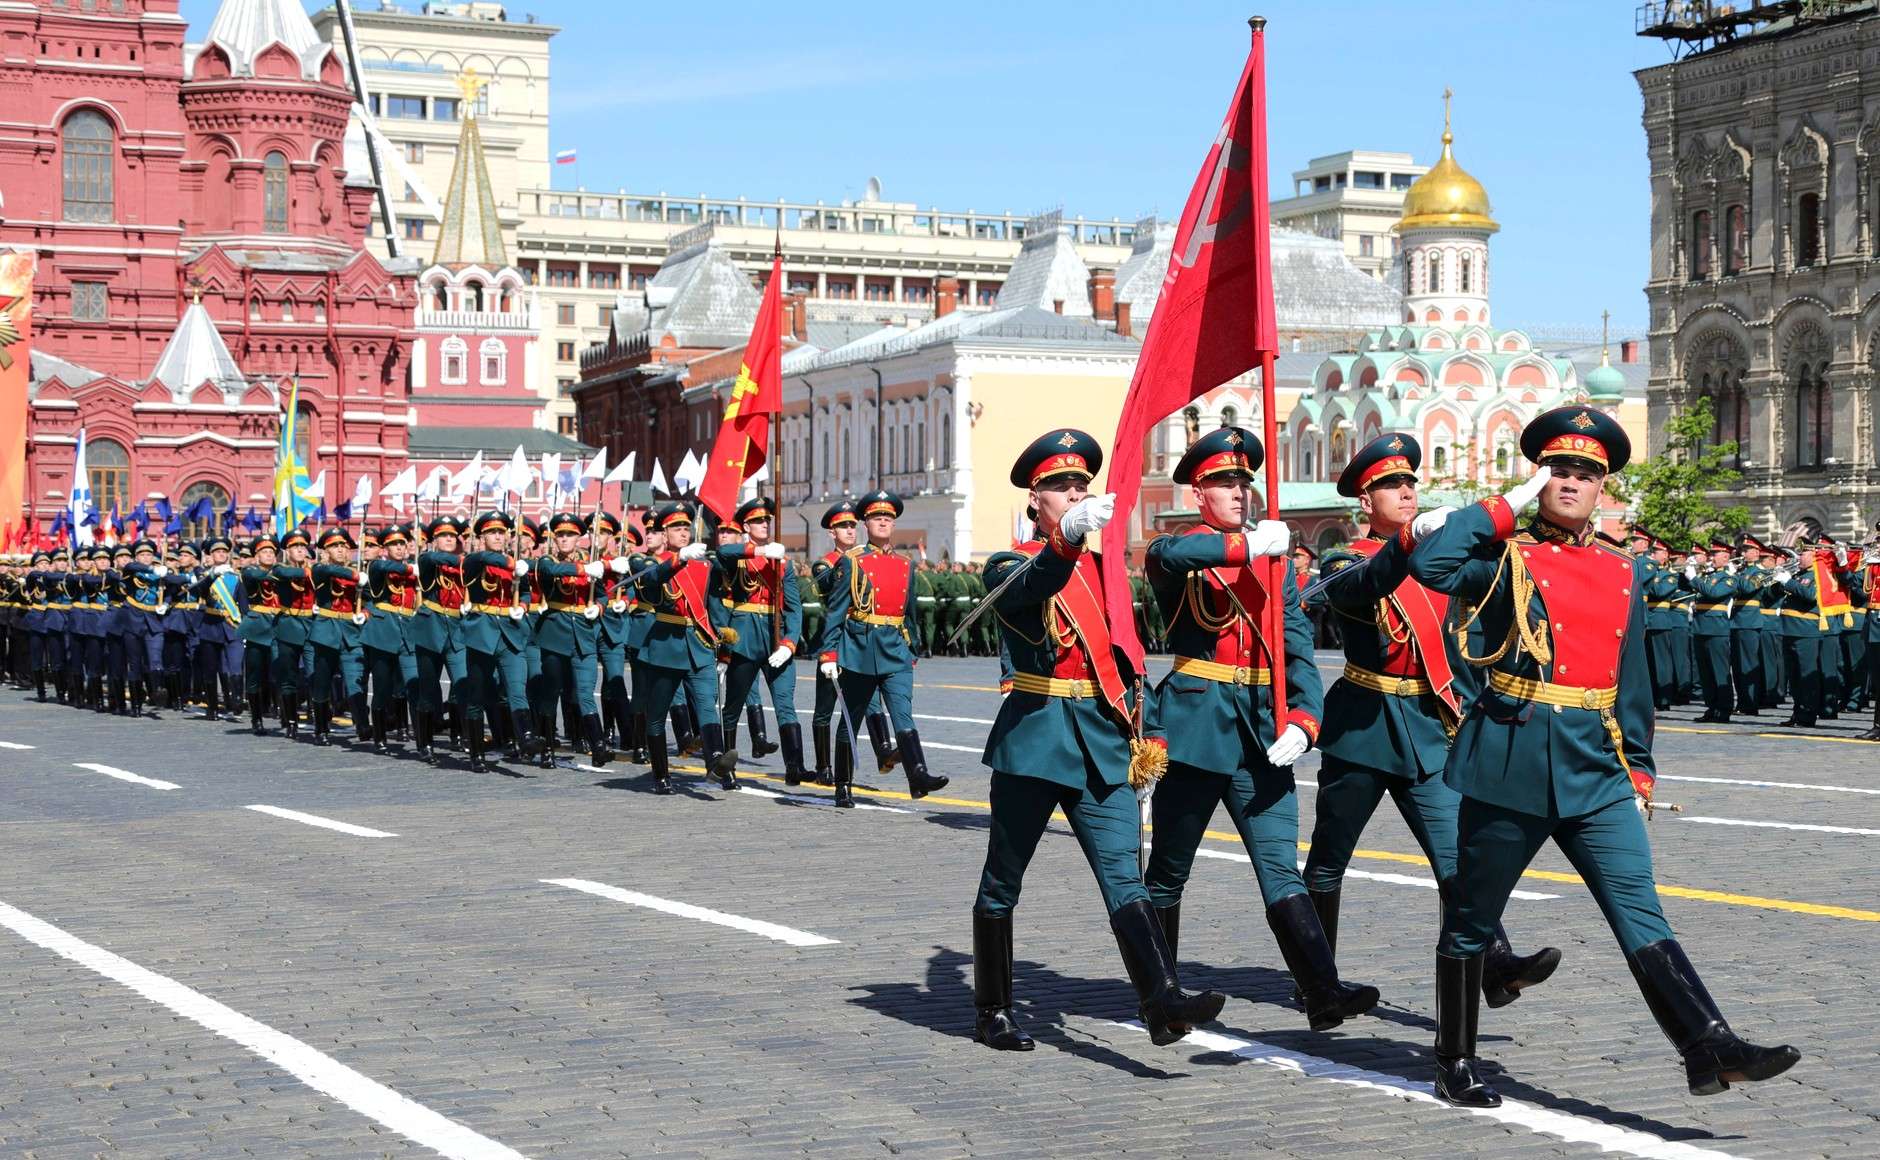 Парад Победы 2019, Москва: онлайн трансляция 9 мая, где смотреть ВИДЕО, во сколько салют, время начала